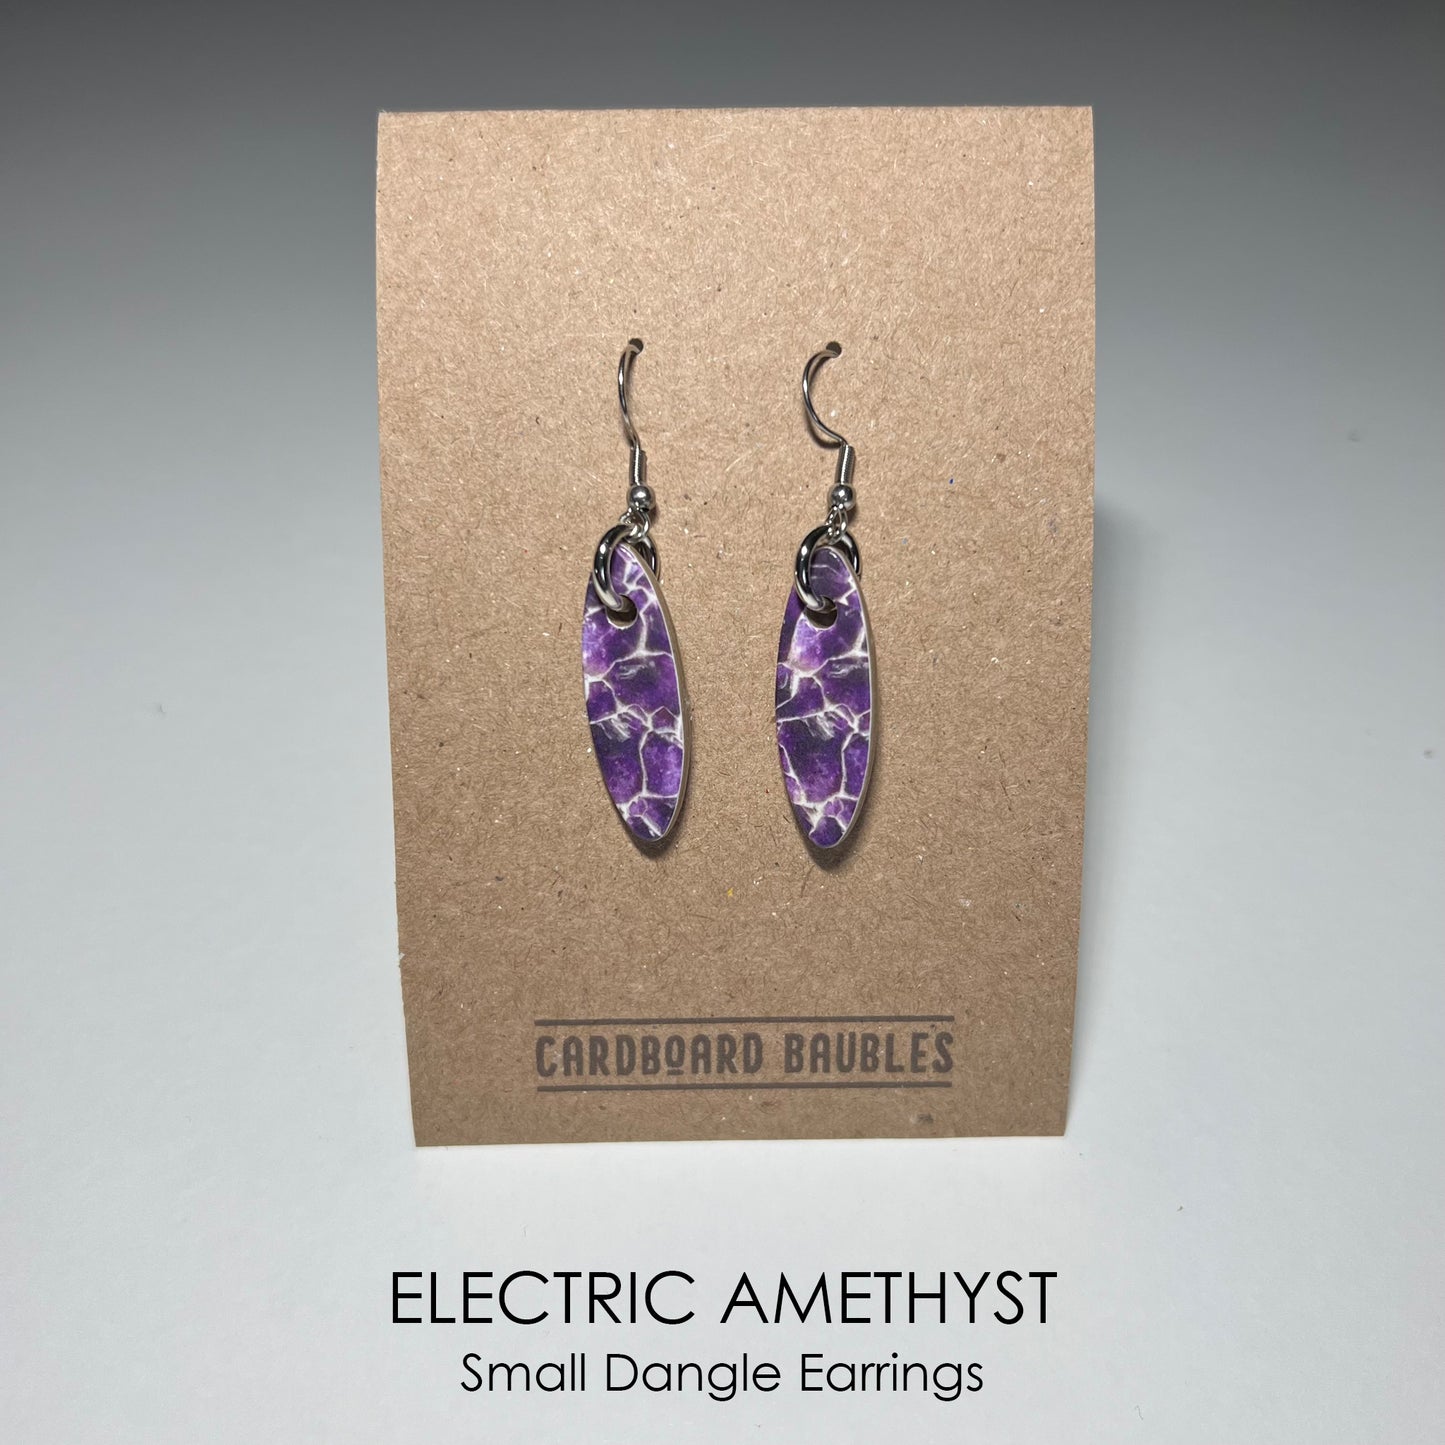 ELECTRIC AMETHYST - Oval Cardboard Baubles Earrings